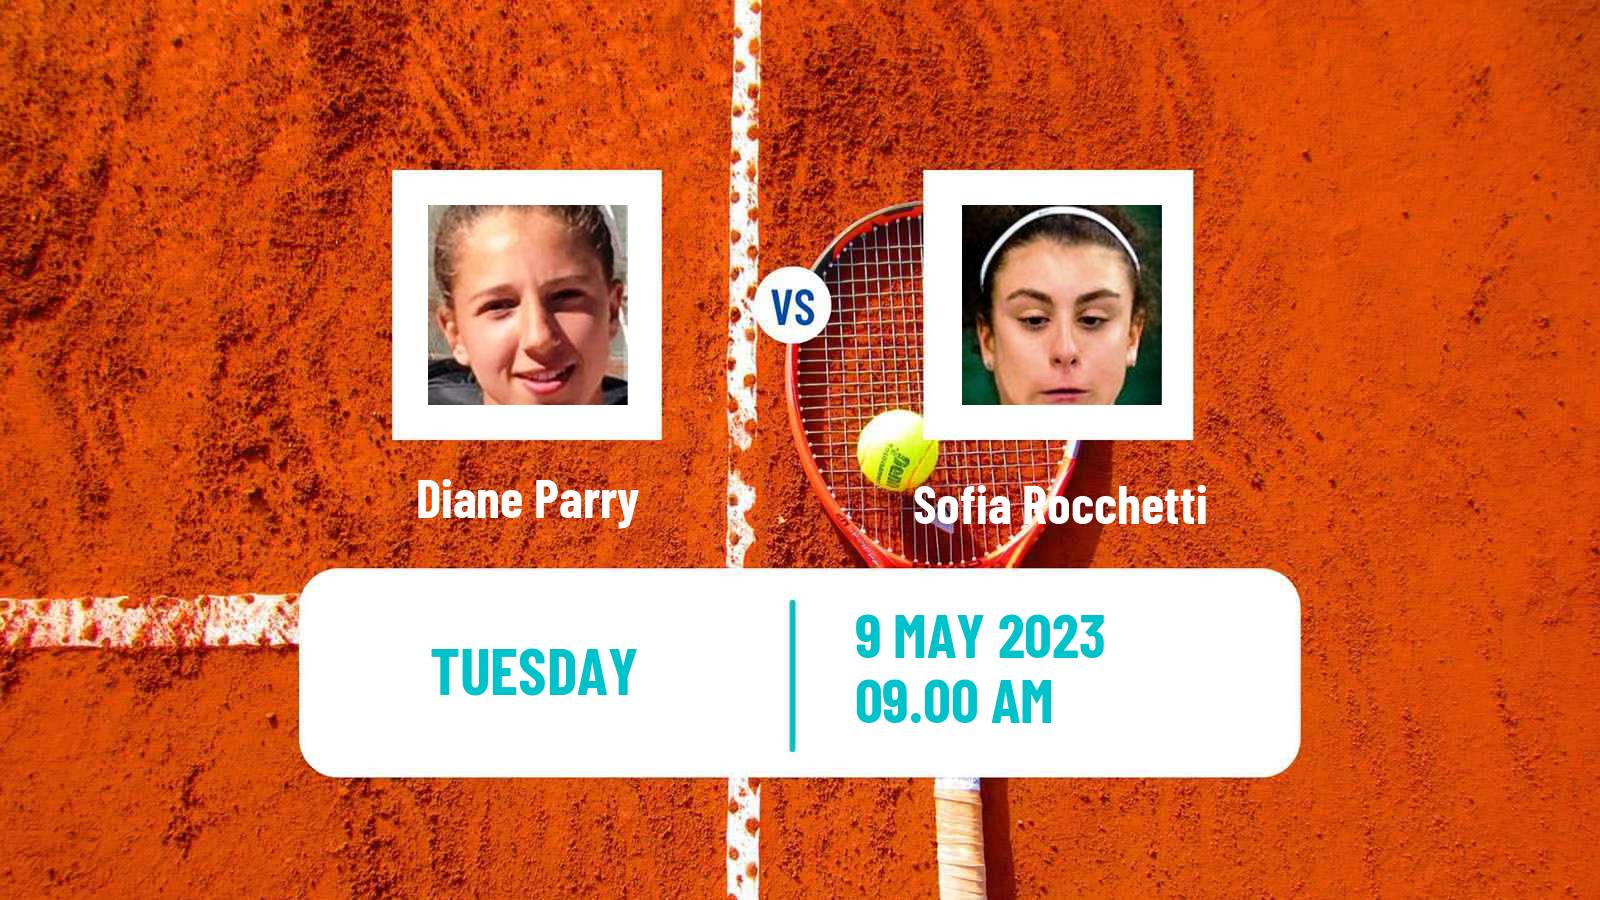 Tennis ITF Tournaments Diane Parry - Sofia Rocchetti